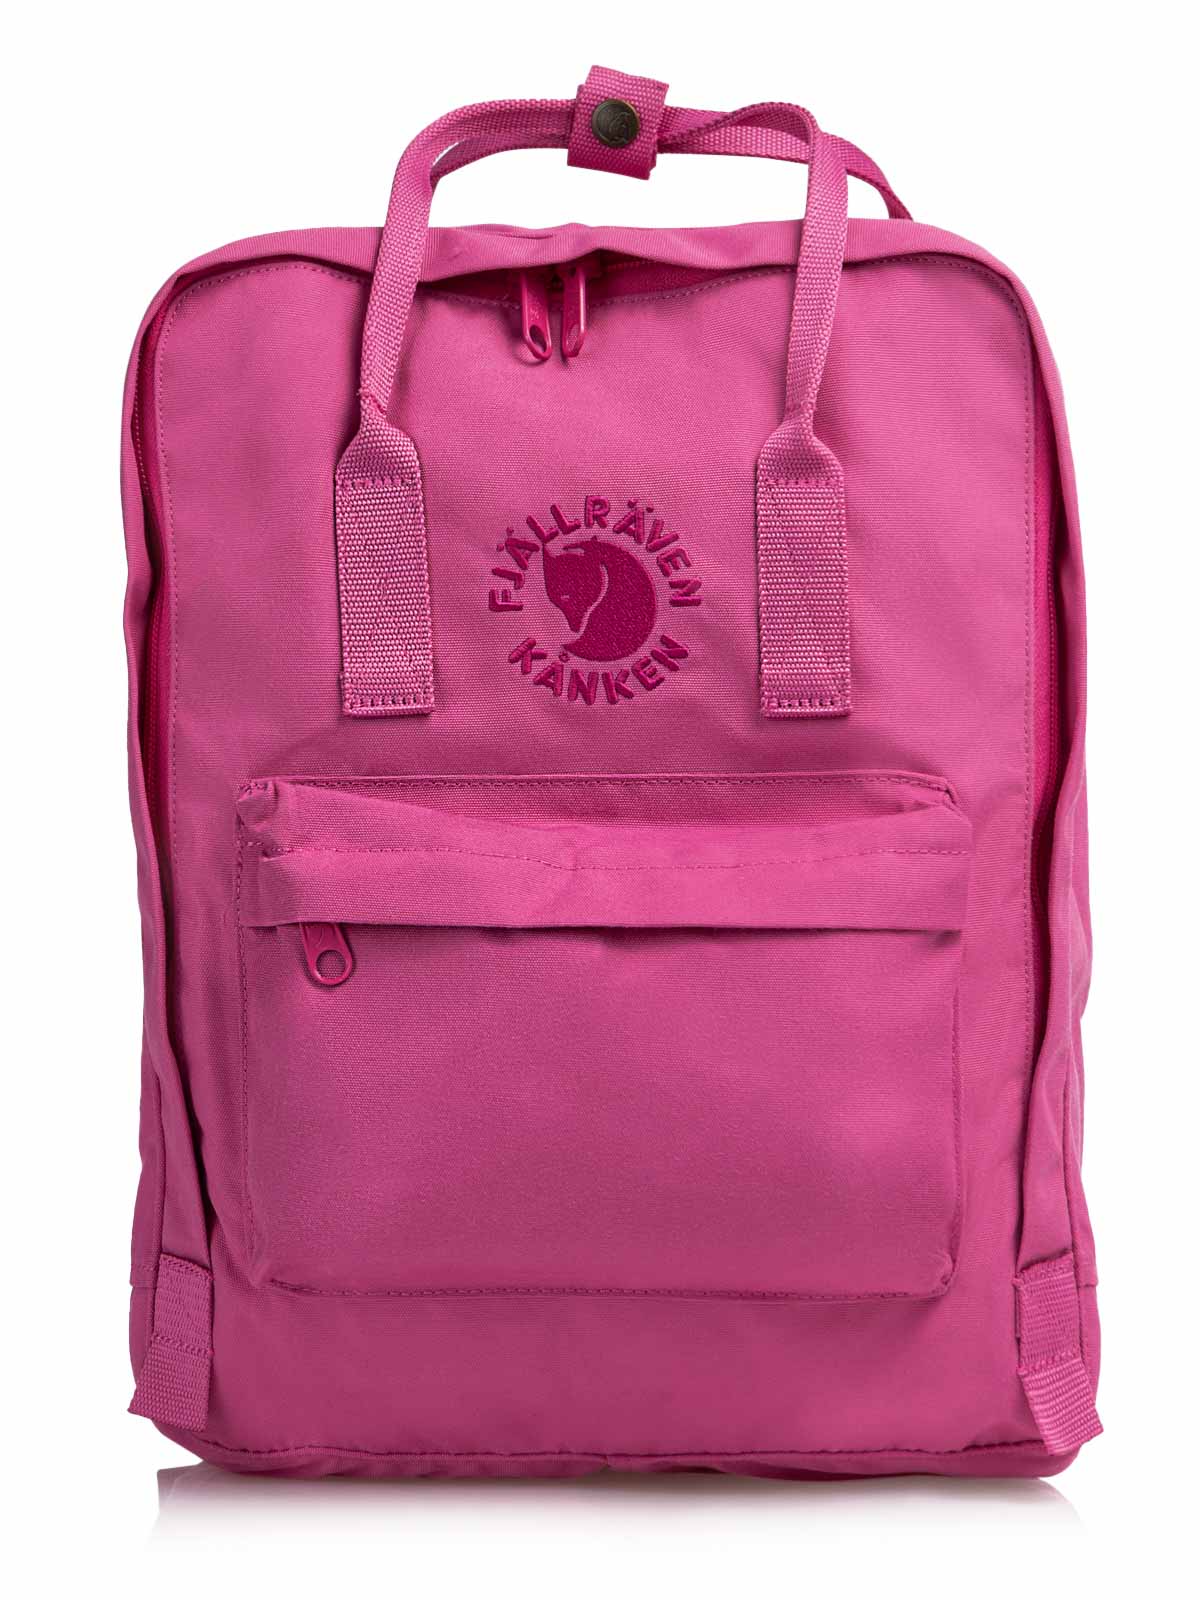 Plecak Re - Kanken Pink Rose F23548-309